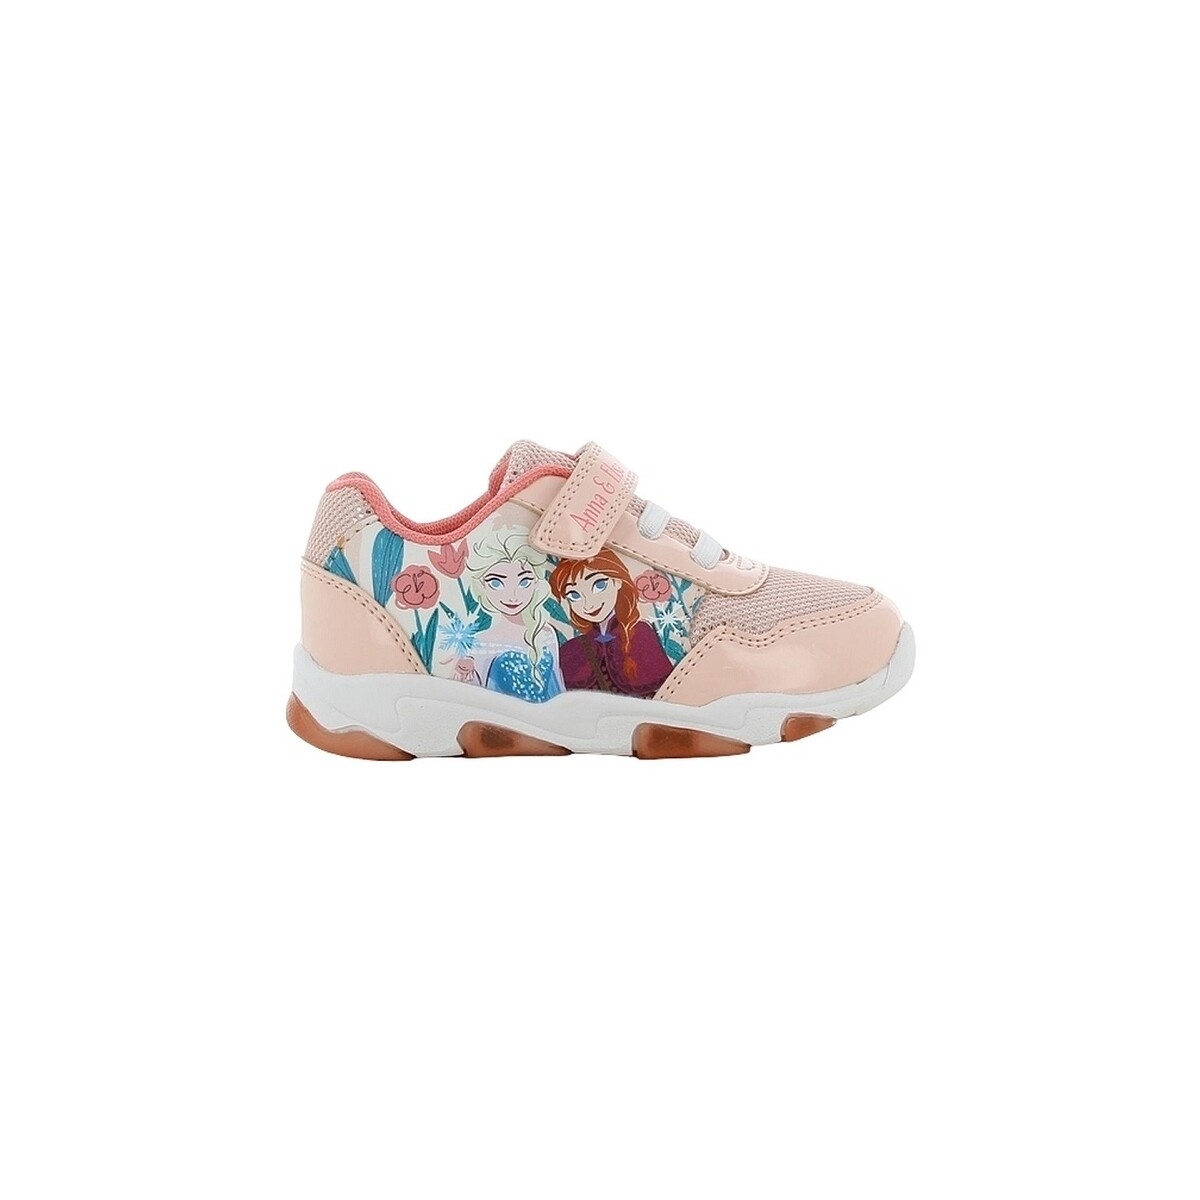 Παπούτσια Κορίτσι Sneakers Leomil FROZEN Ροζ